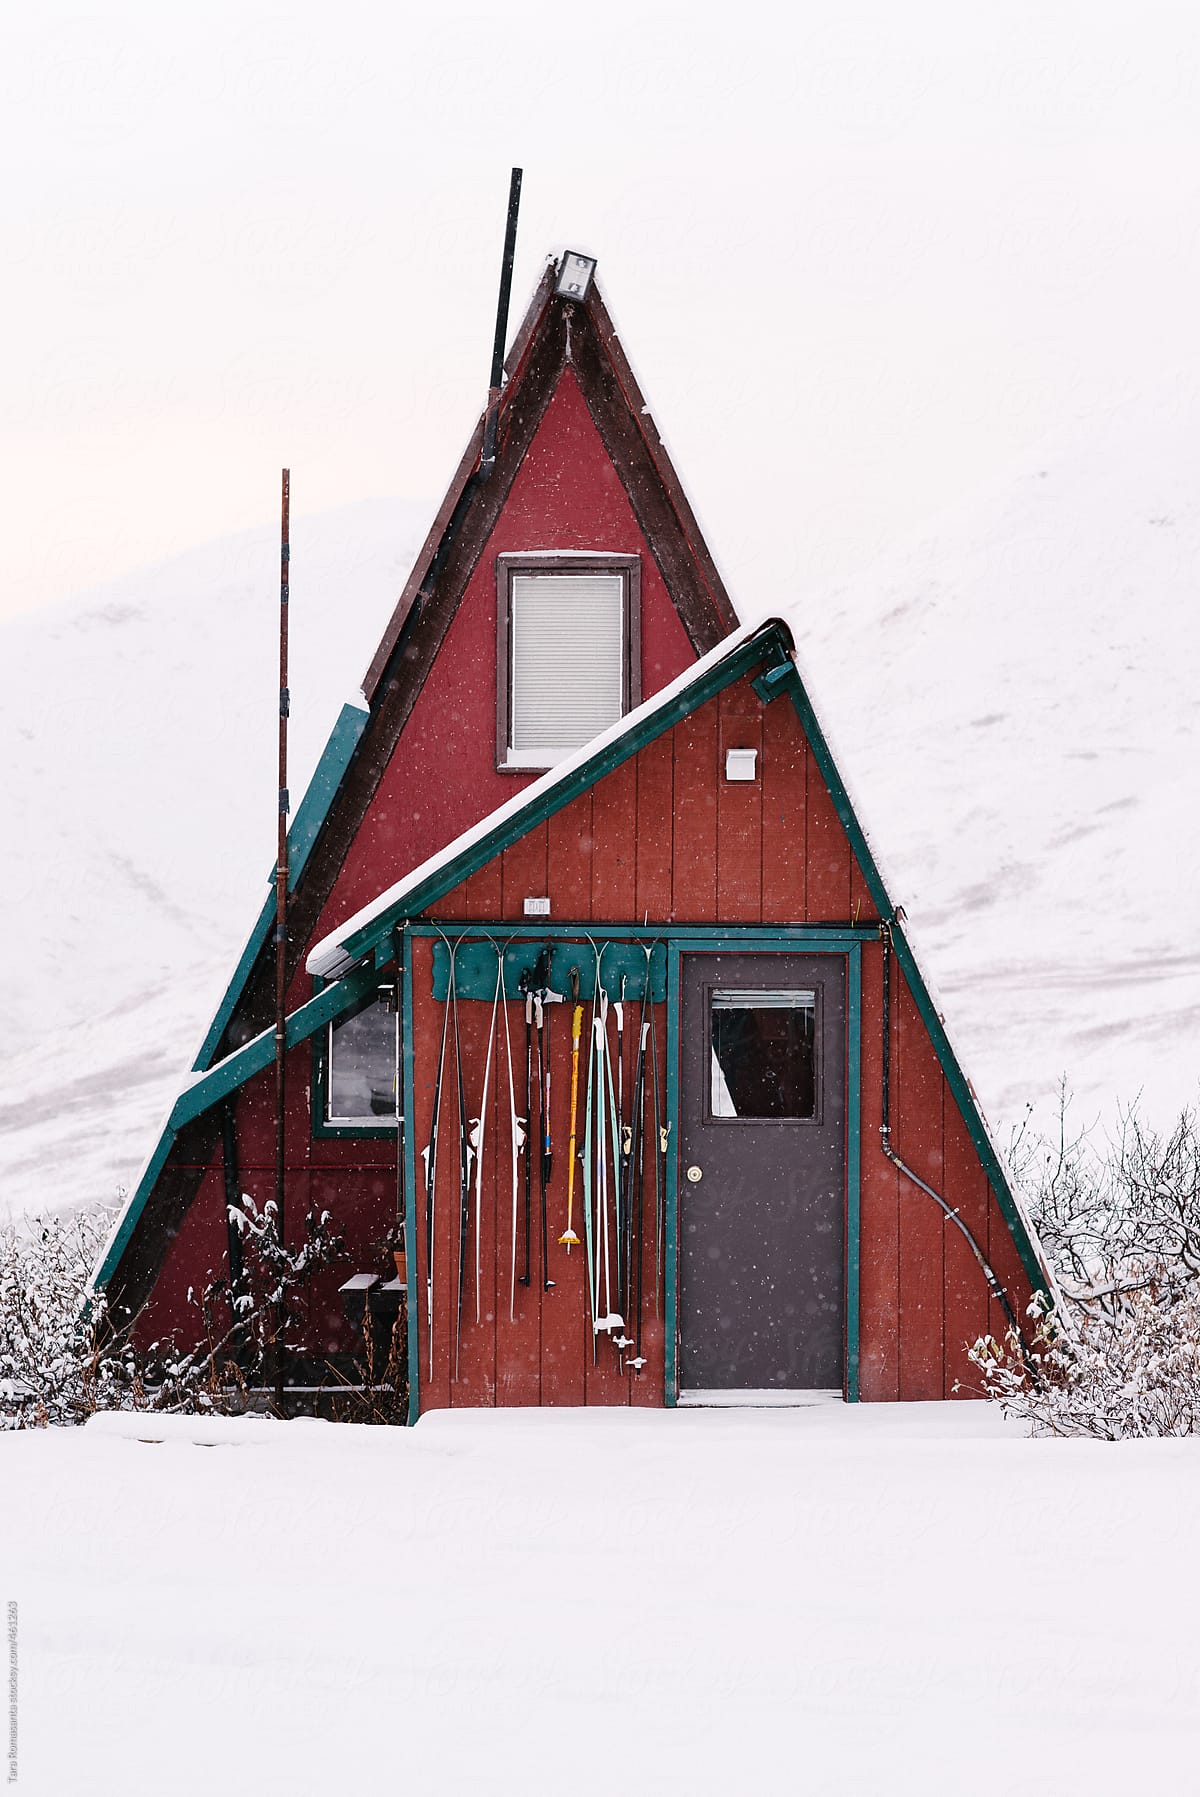 A-frame cabin in Alaska in the snow